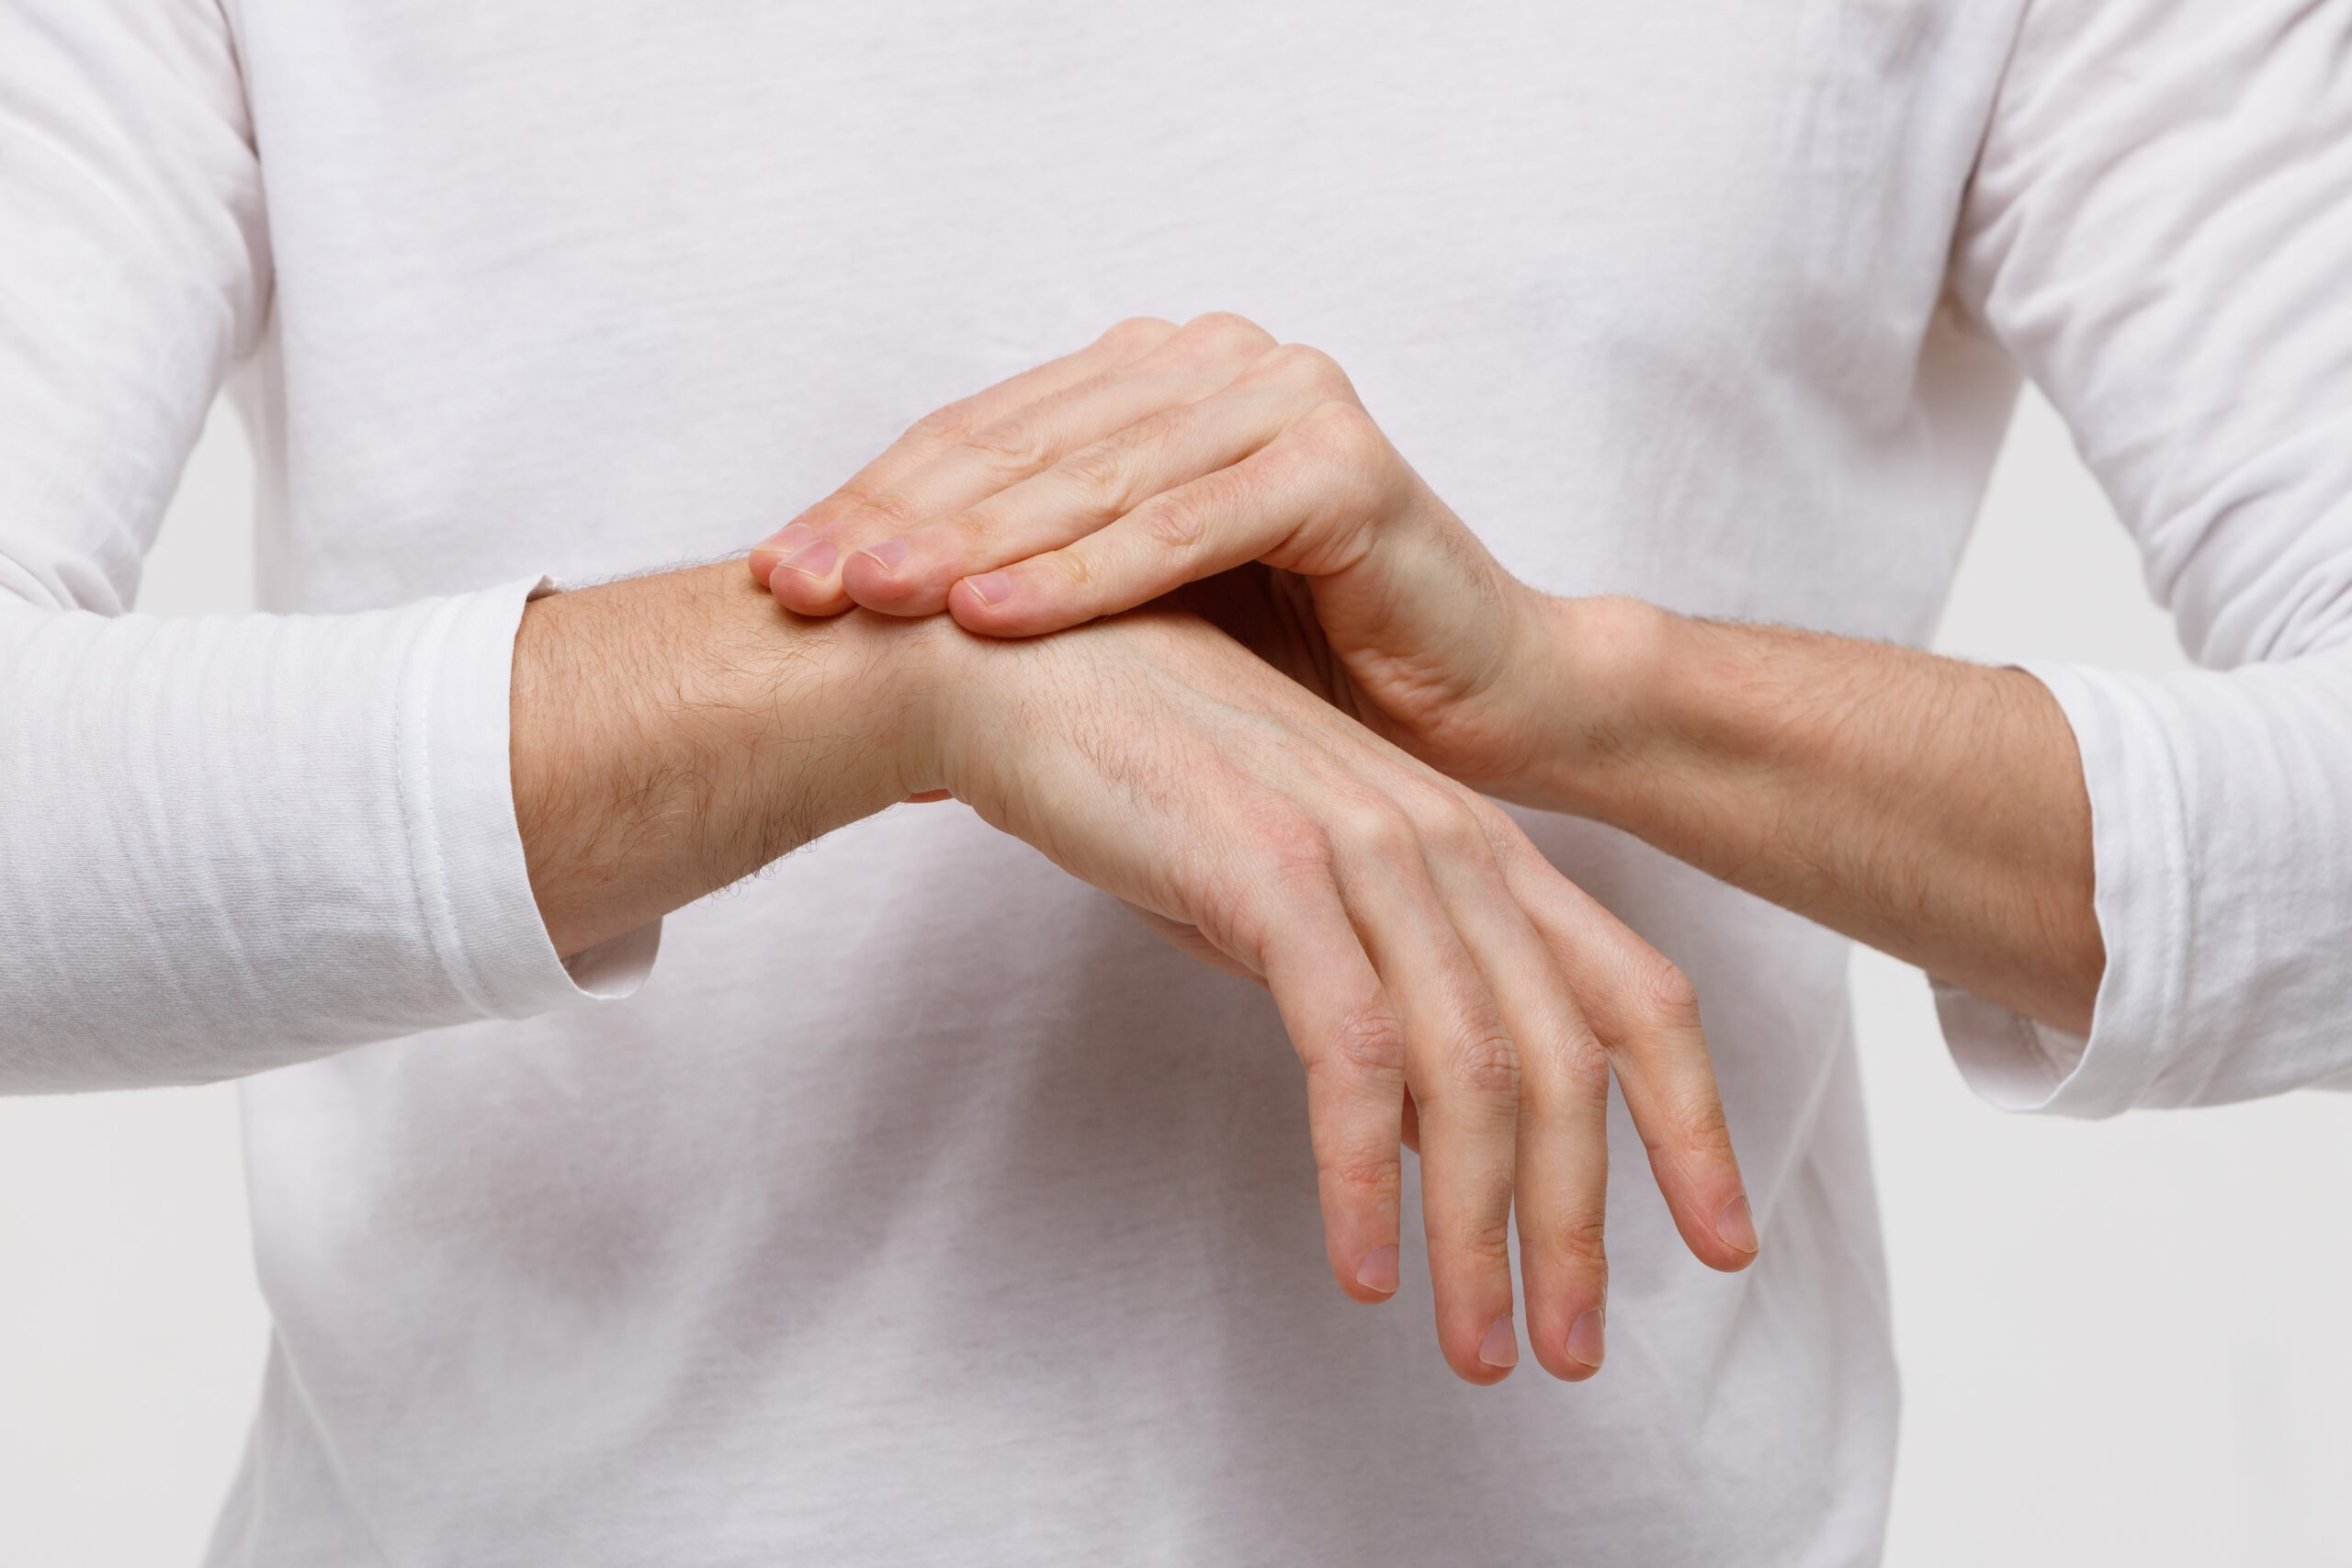 Arthrite et arthrose : pourquoi et comment être physiquement actif! (19 février)